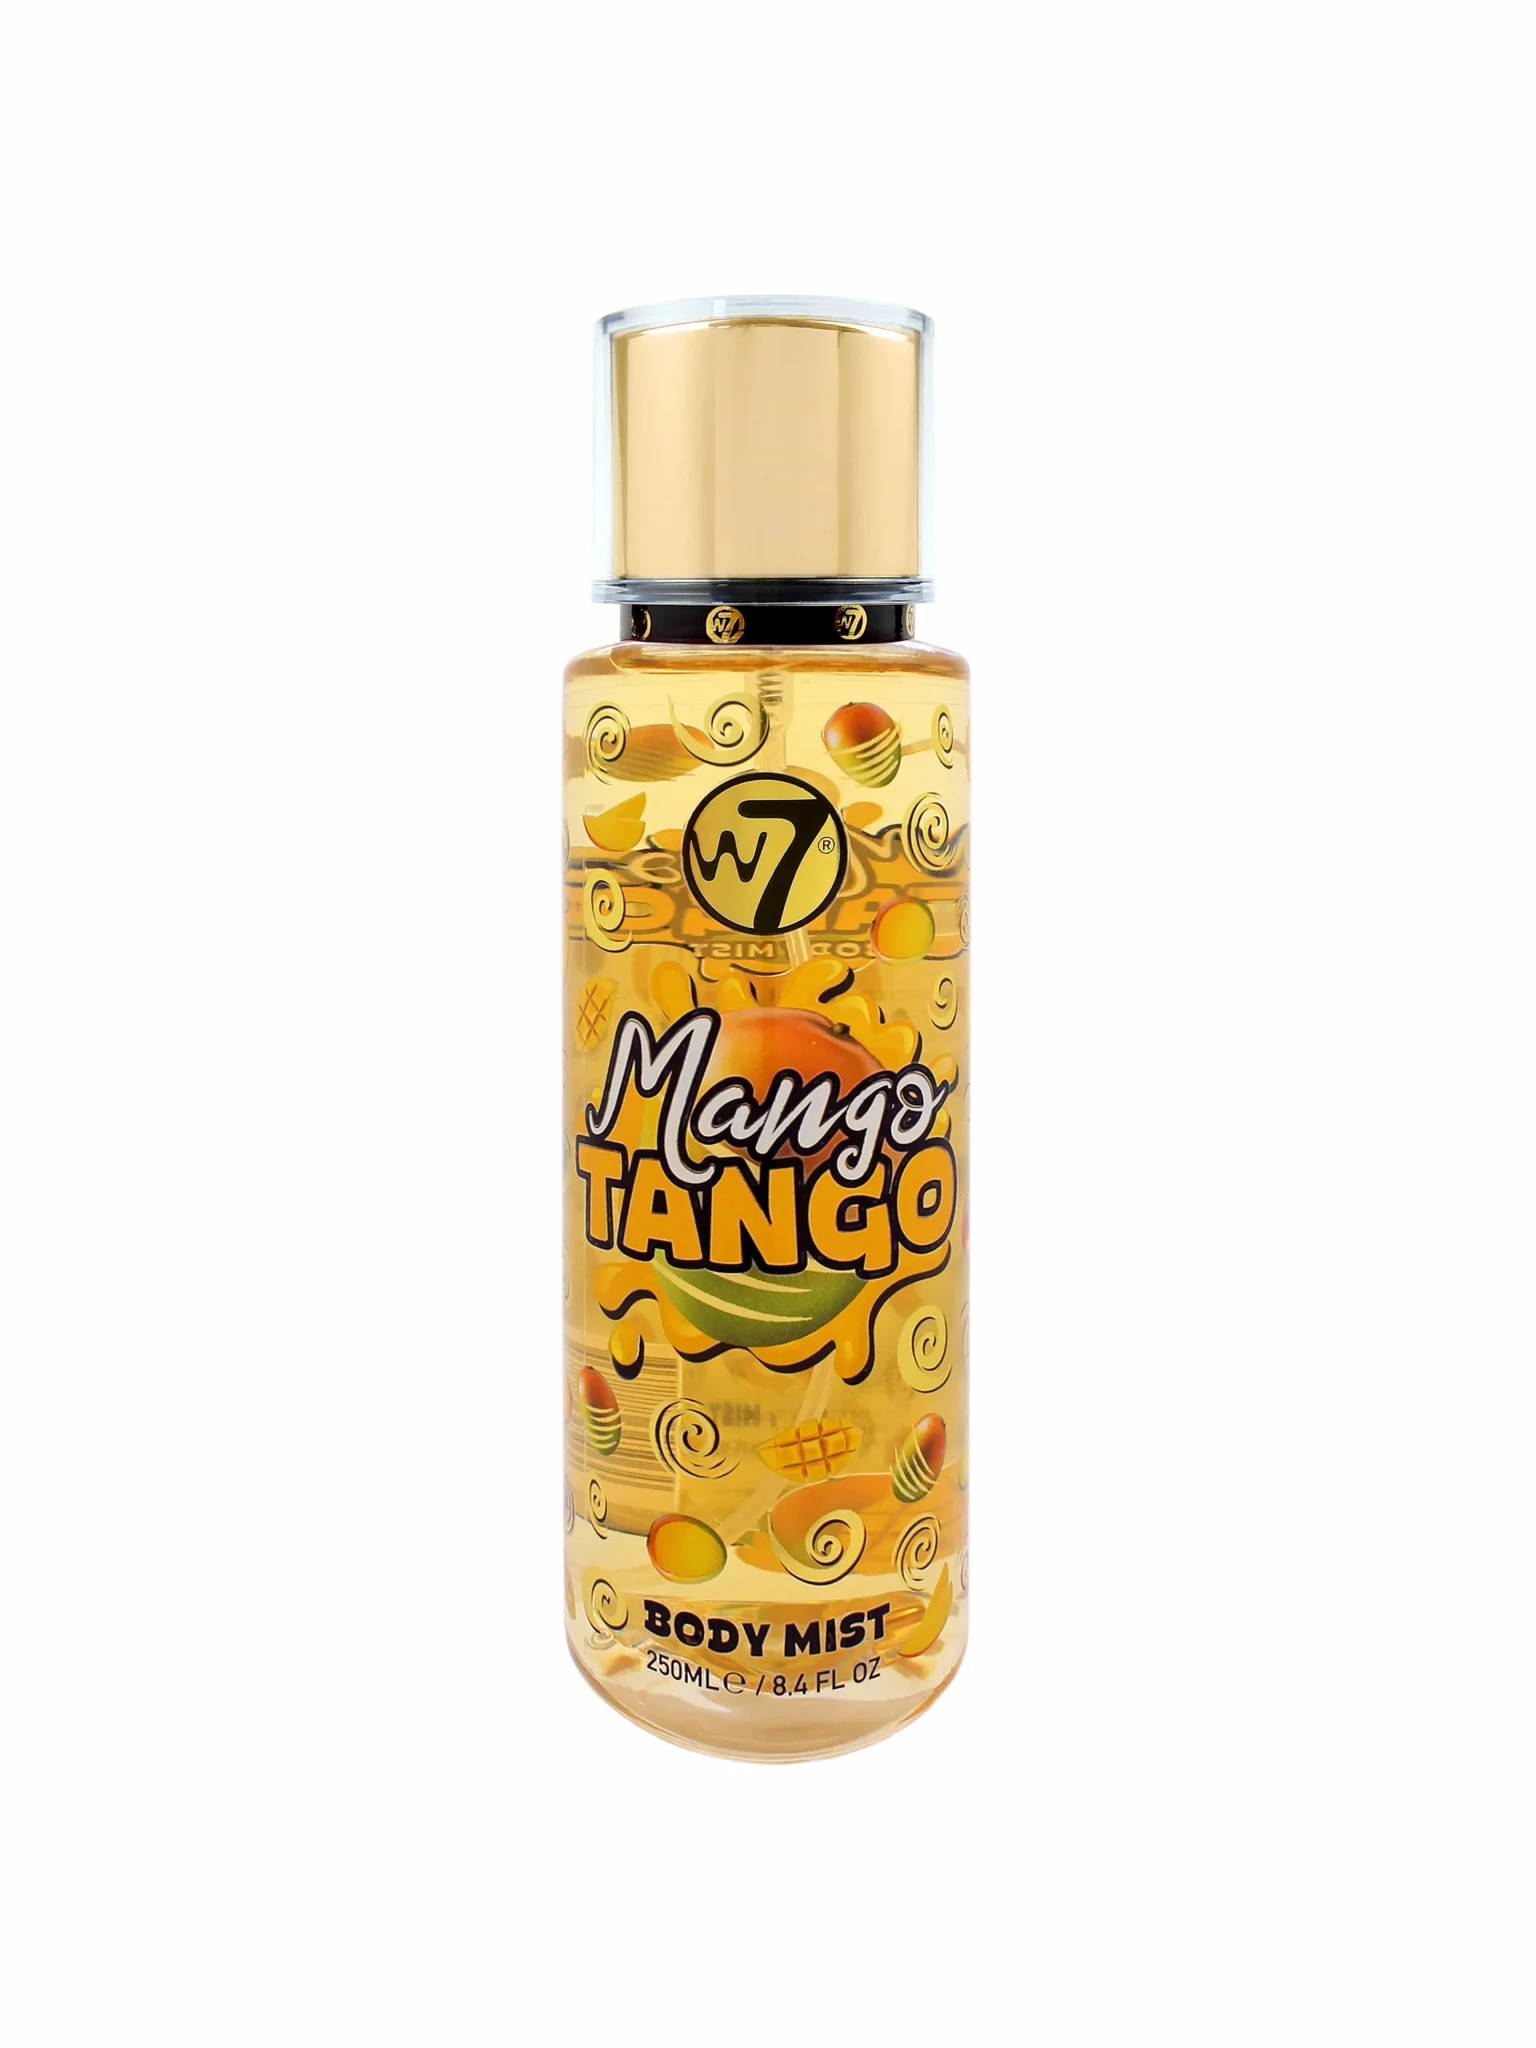 W7 mango tango body mist 250ml